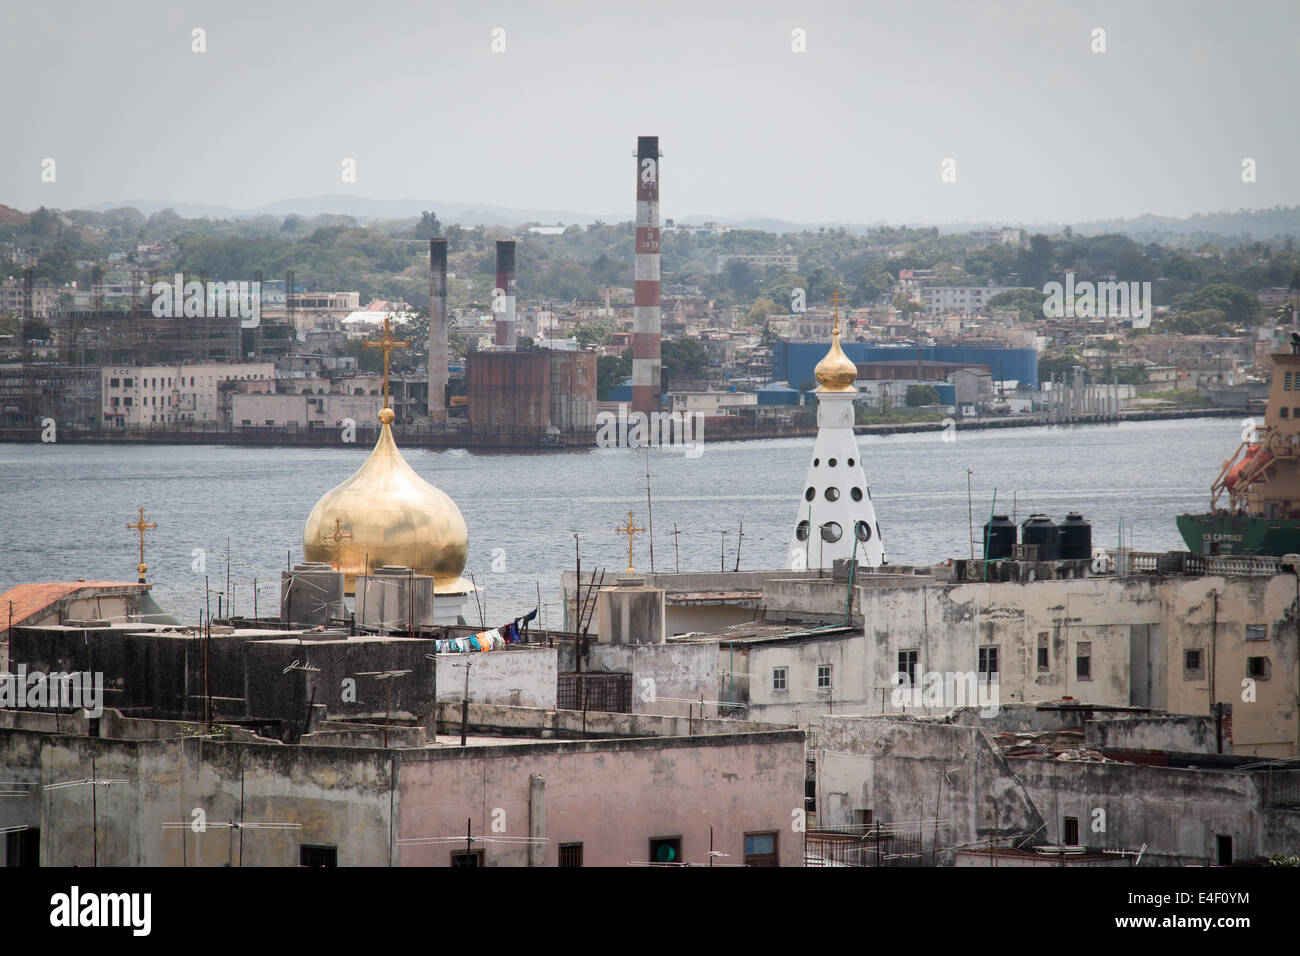 Russische orthodoxe Kirche mit Fabrik Rauch Stacks im Hintergrund, Havanna, Kuba Havanna Vieja (Altstadt) Stockfoto